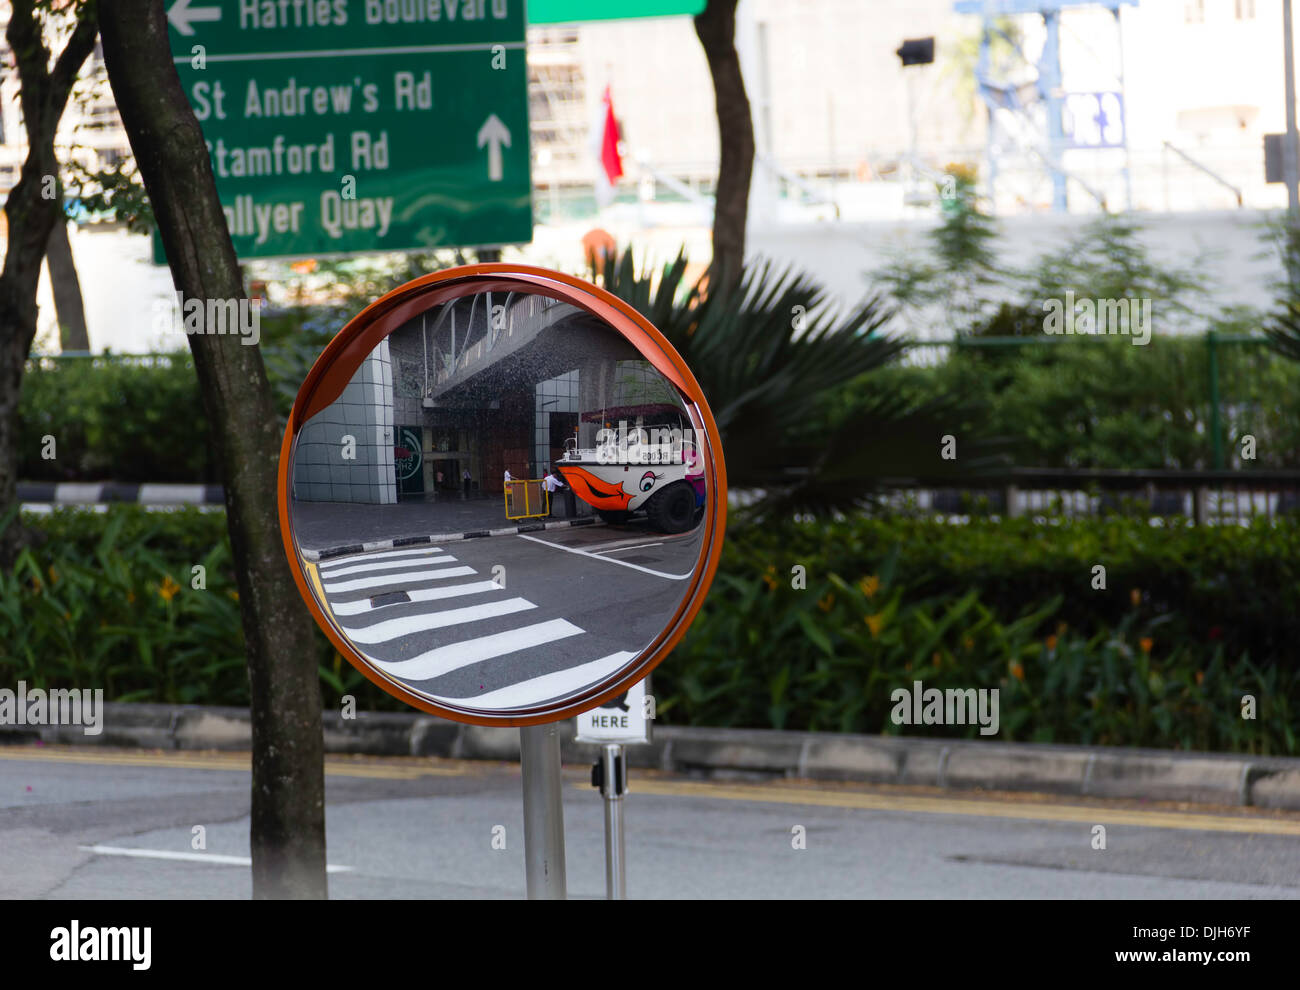 Veicolo anfibio utilizzato per il Duck Tour crociera in Singapore visto in uno specchio posizionato sulla strada, con indicazioni in retro Foto Stock